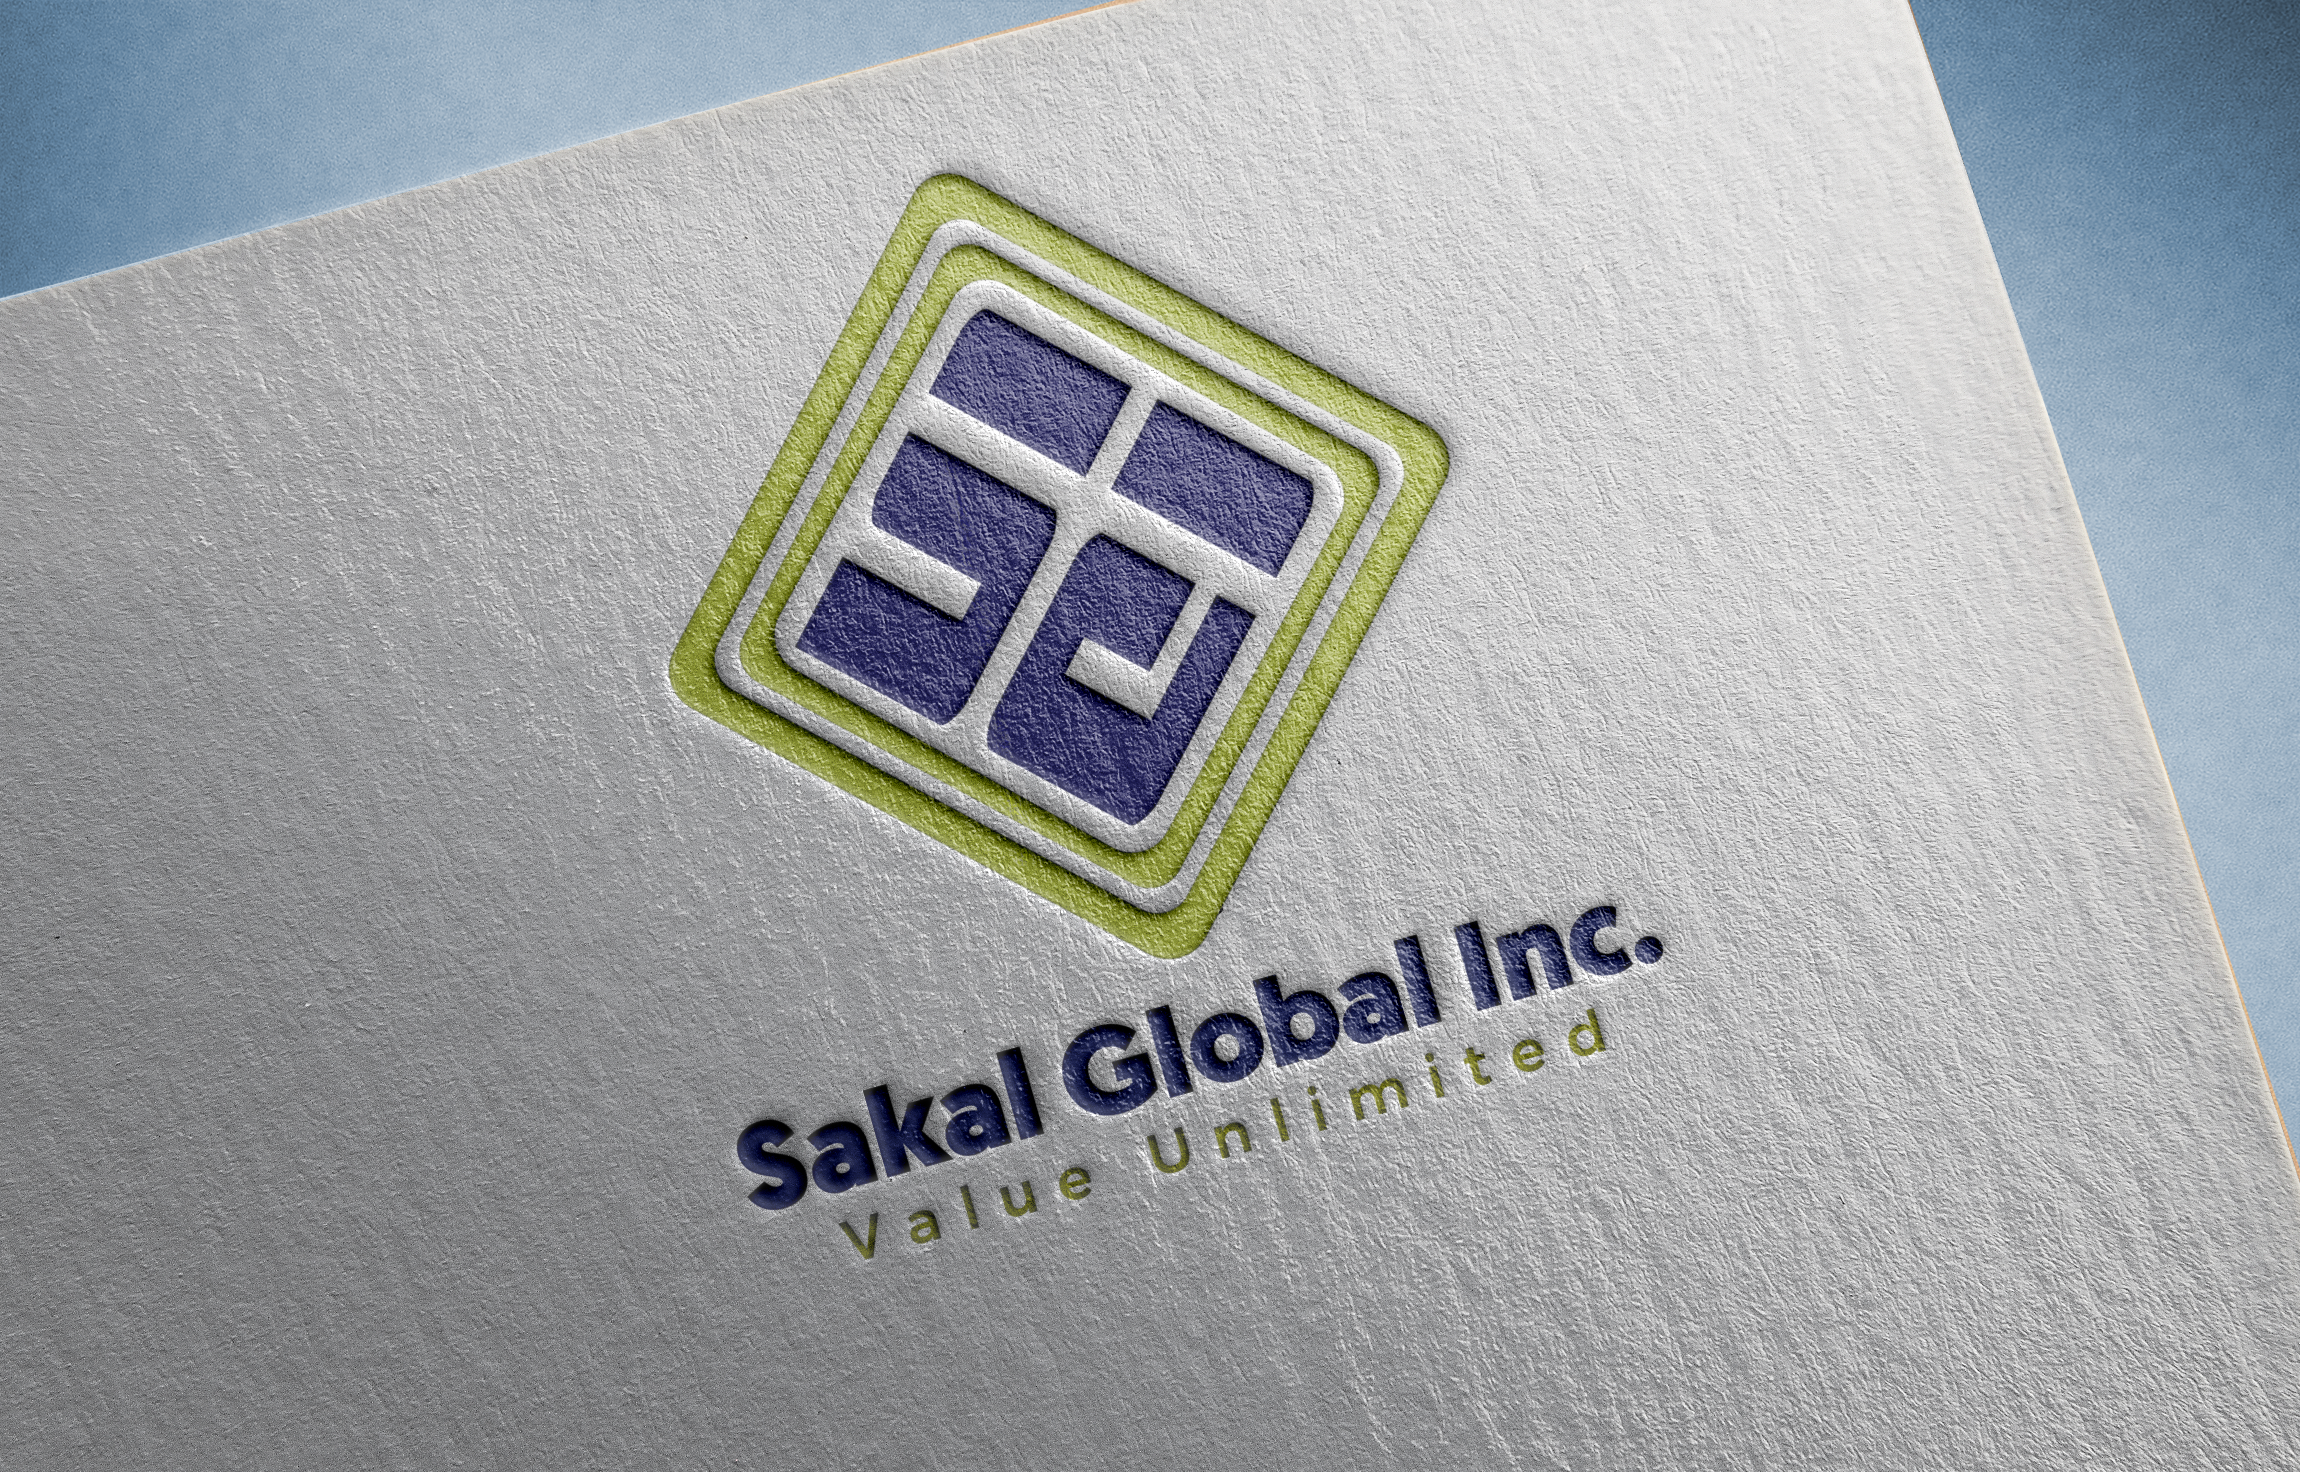 Sakal Global